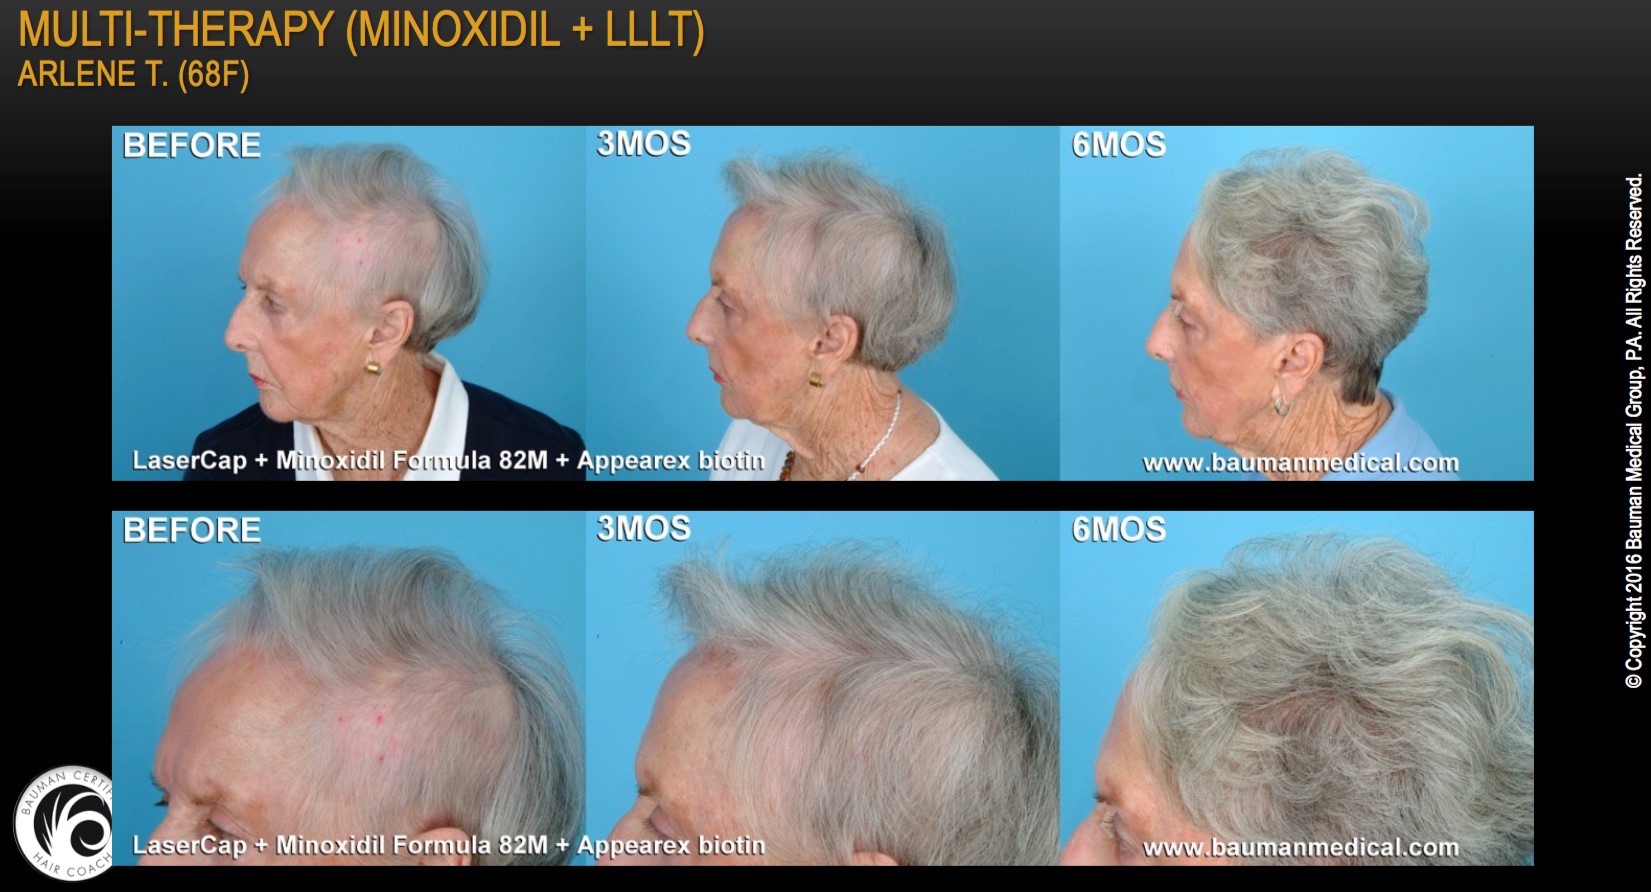 Multi-Therapy (Minoxidil + LLLT)